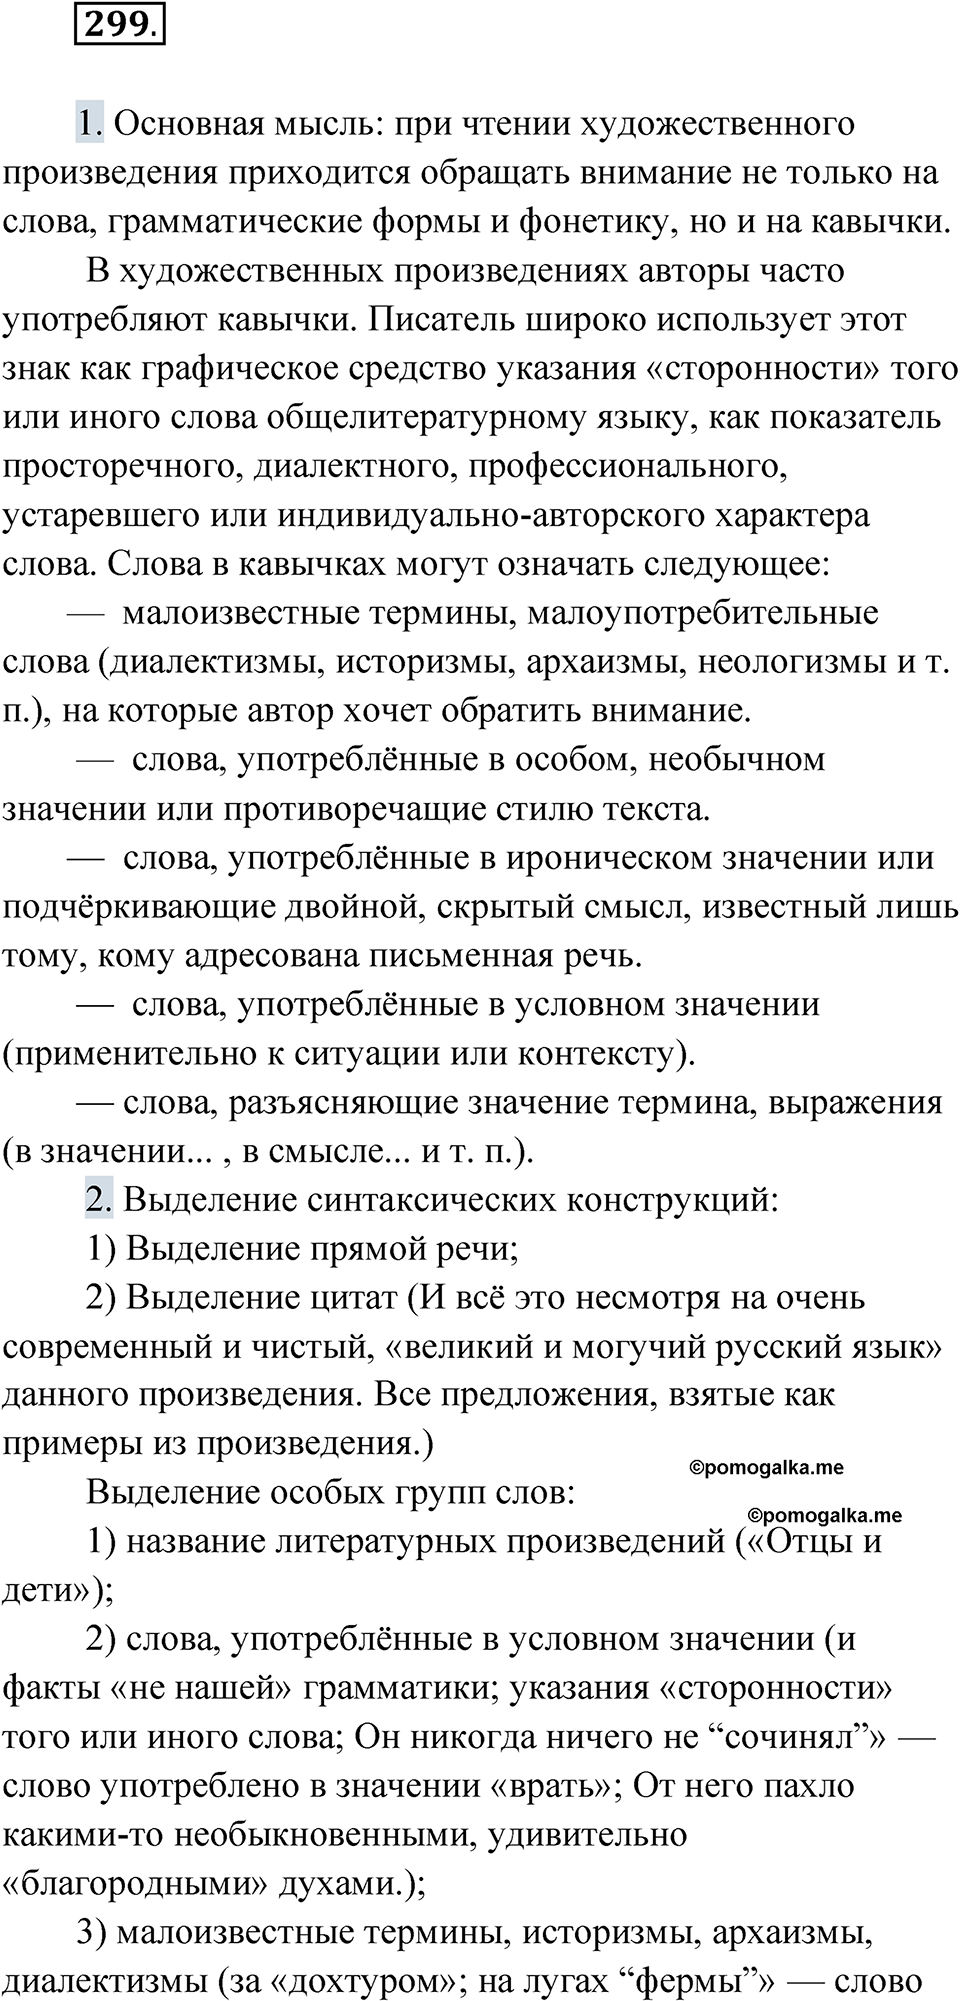 упражнение 299 русский язык 10 класс Львова 2021 год